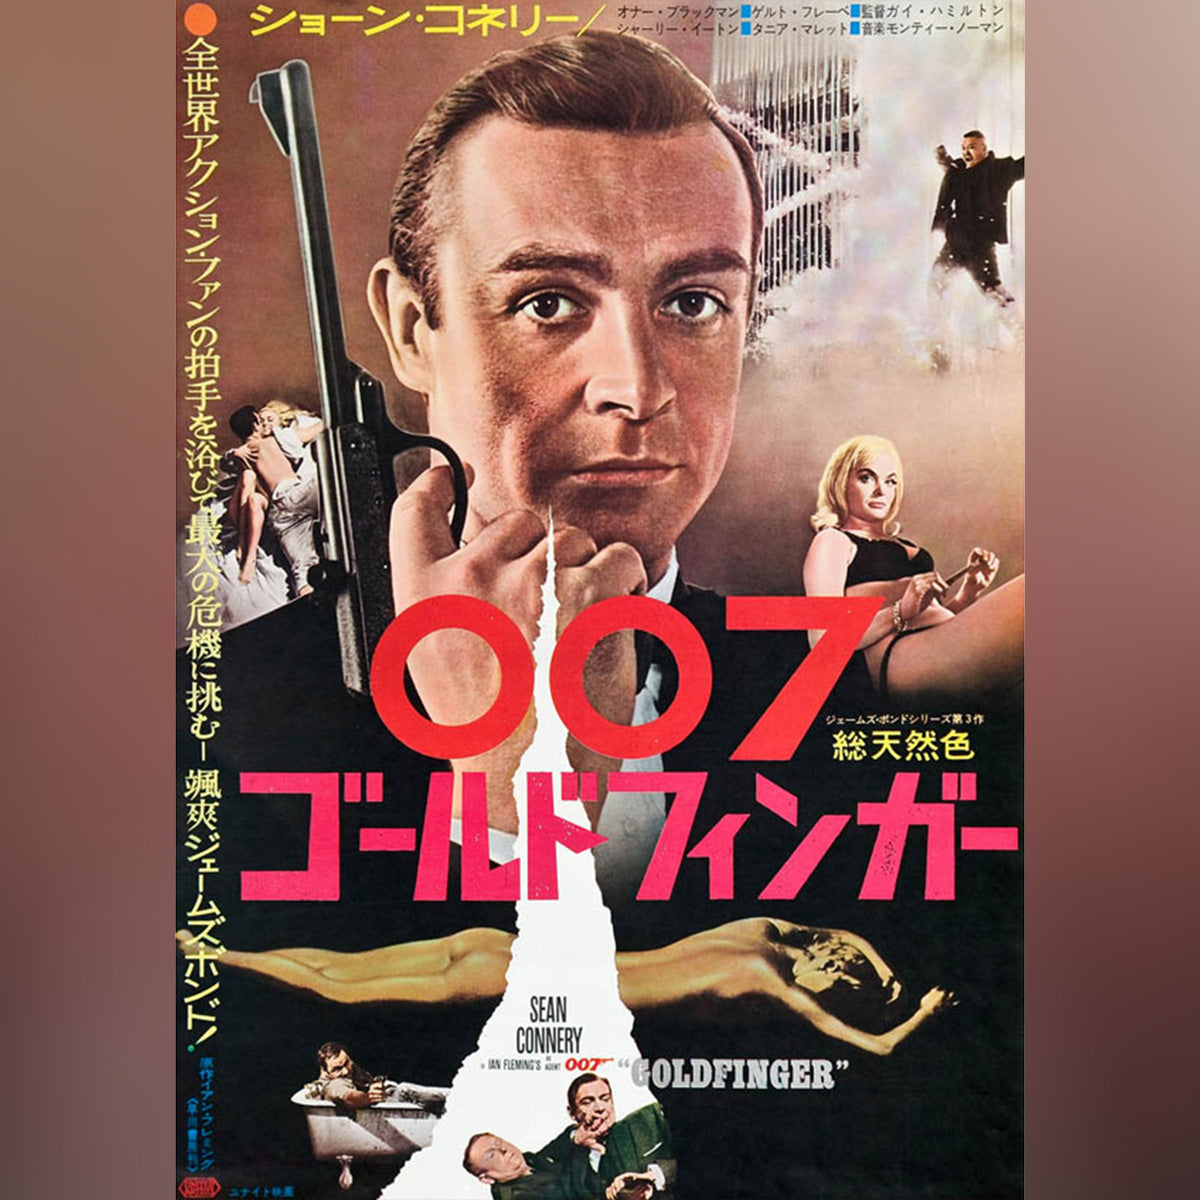 Original Movie Poster of Goldfinger (1964)